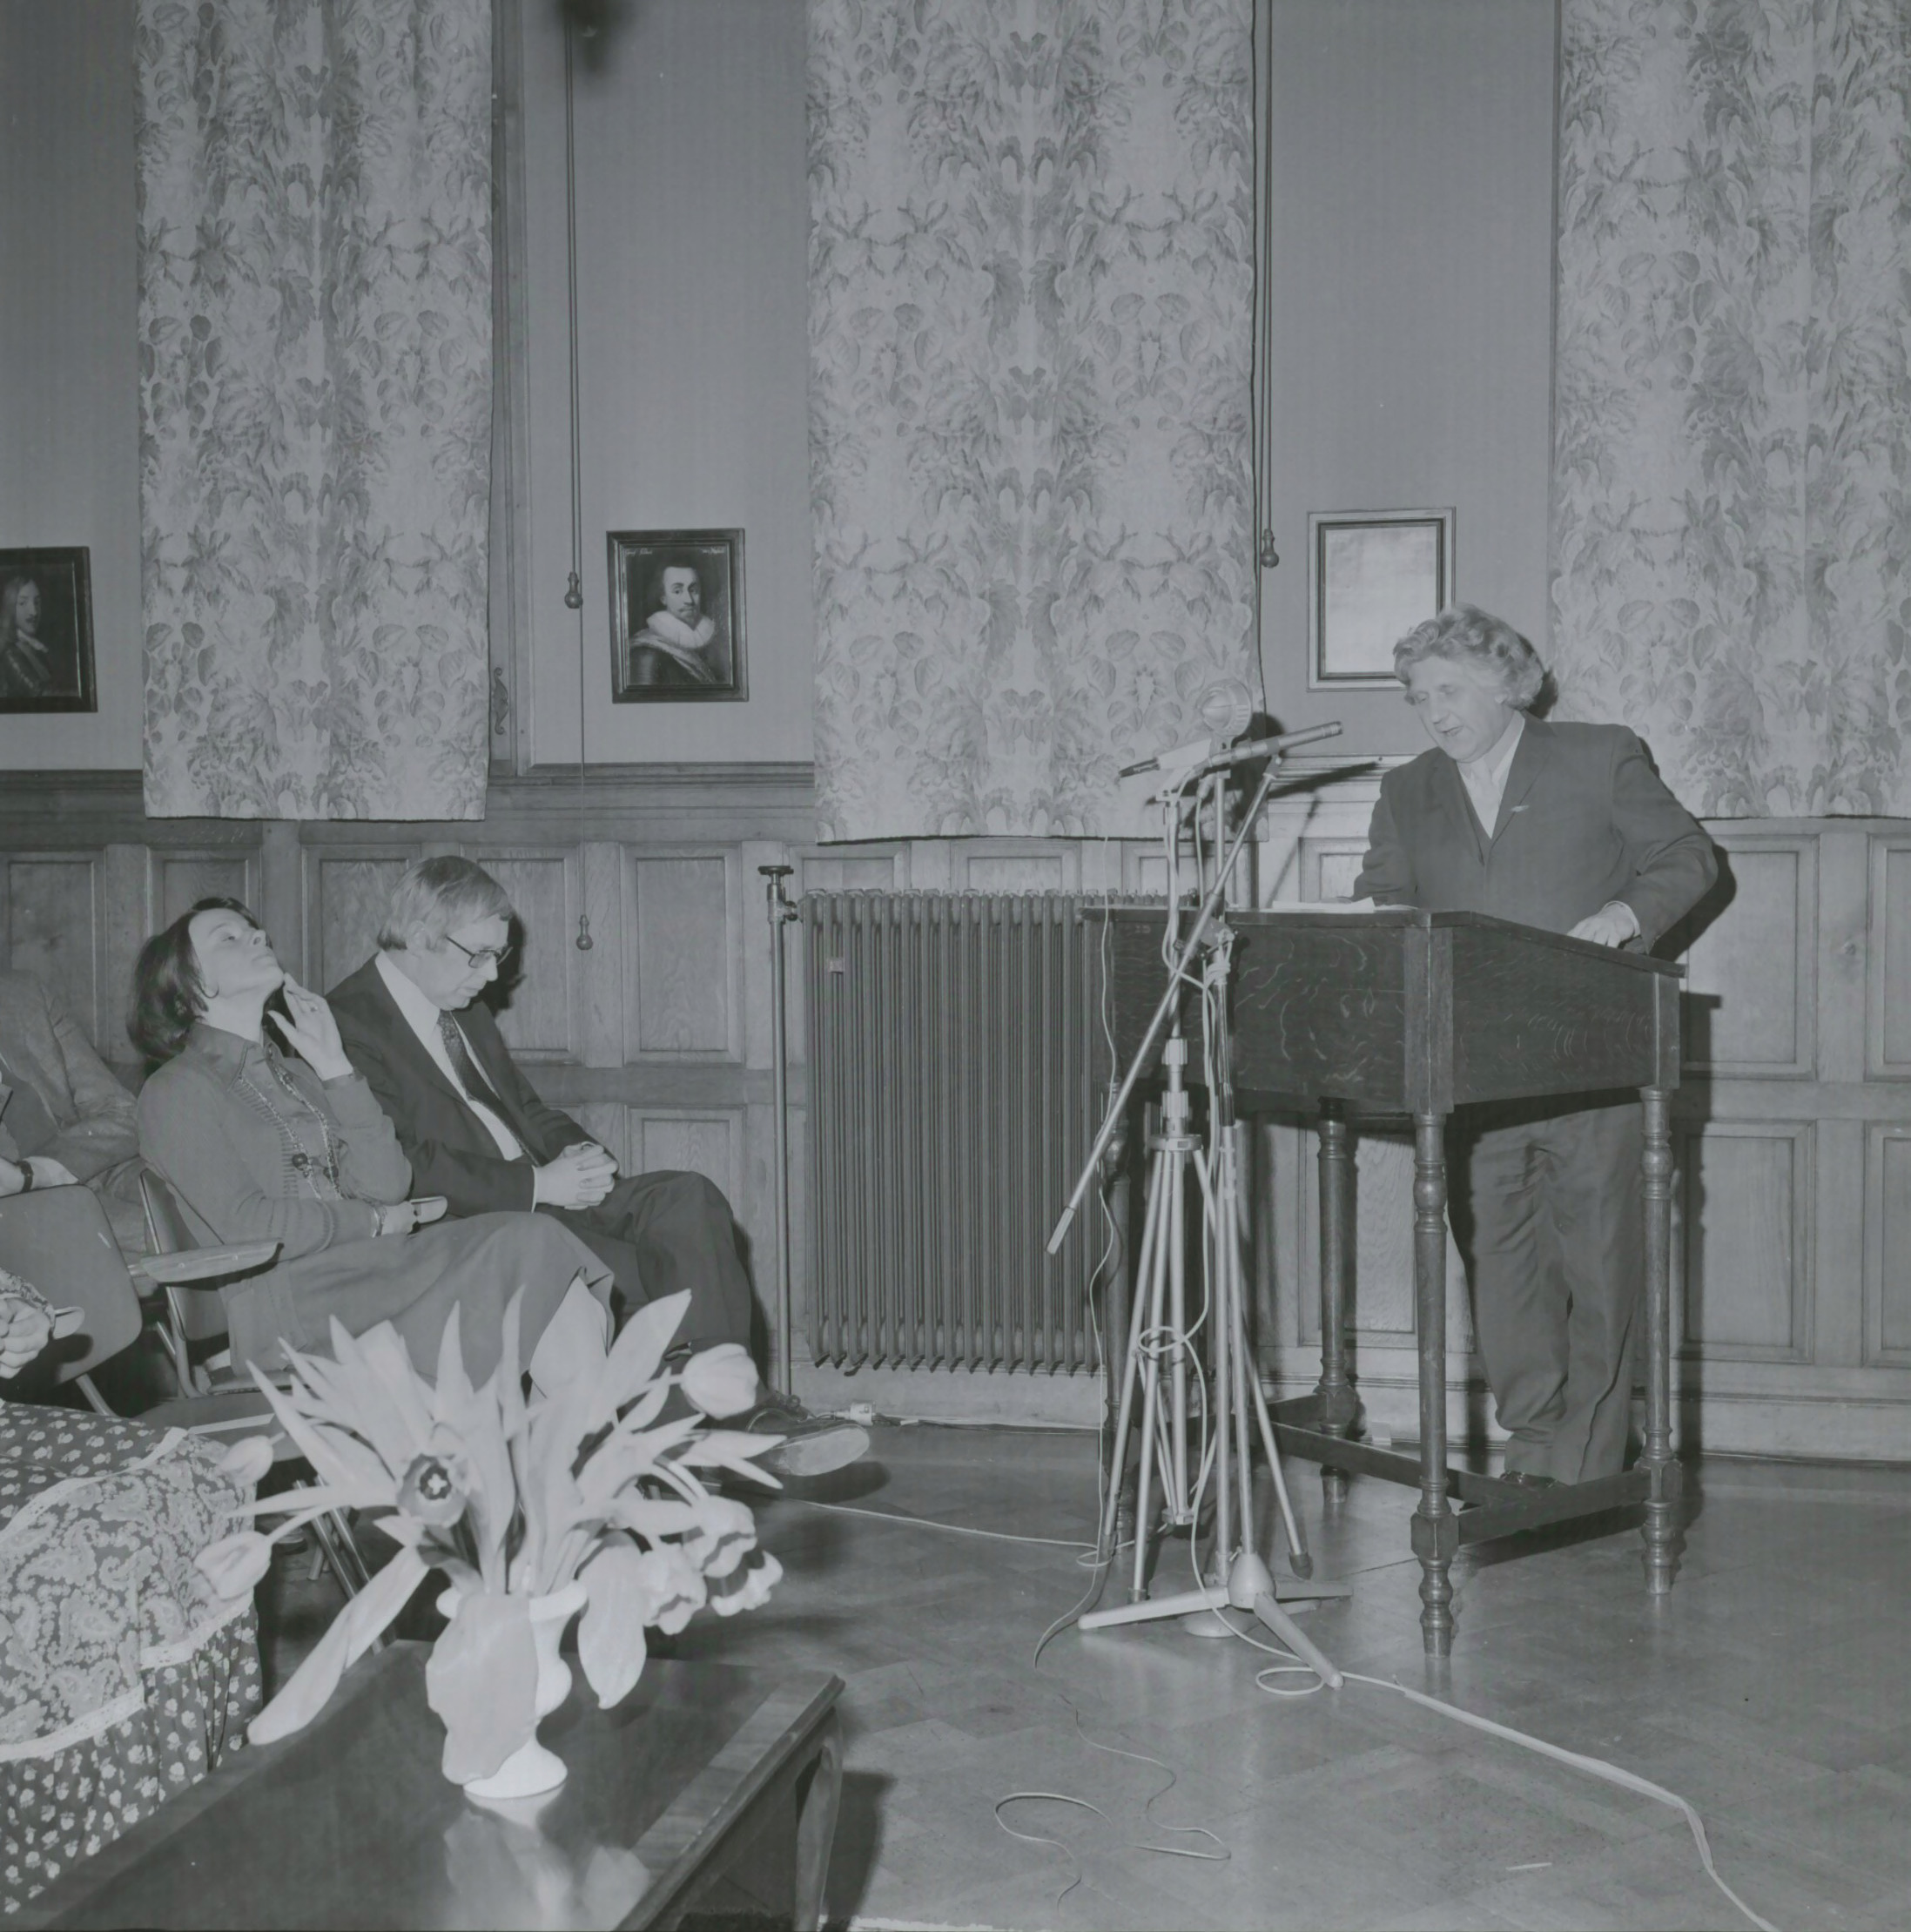 Dichter Simon van Wattum ontvangt de Culturele Prijs 1974 in het Provinciehuis, uitgereikt door CvdK mr. E. Toxopeus op 17 februari 1975. Vervaardiger: Persfotobureau D. van der Veen, 17 februari 1975. Bron: Beeldbank Groningen, RHC GA, Groninger Archieven.